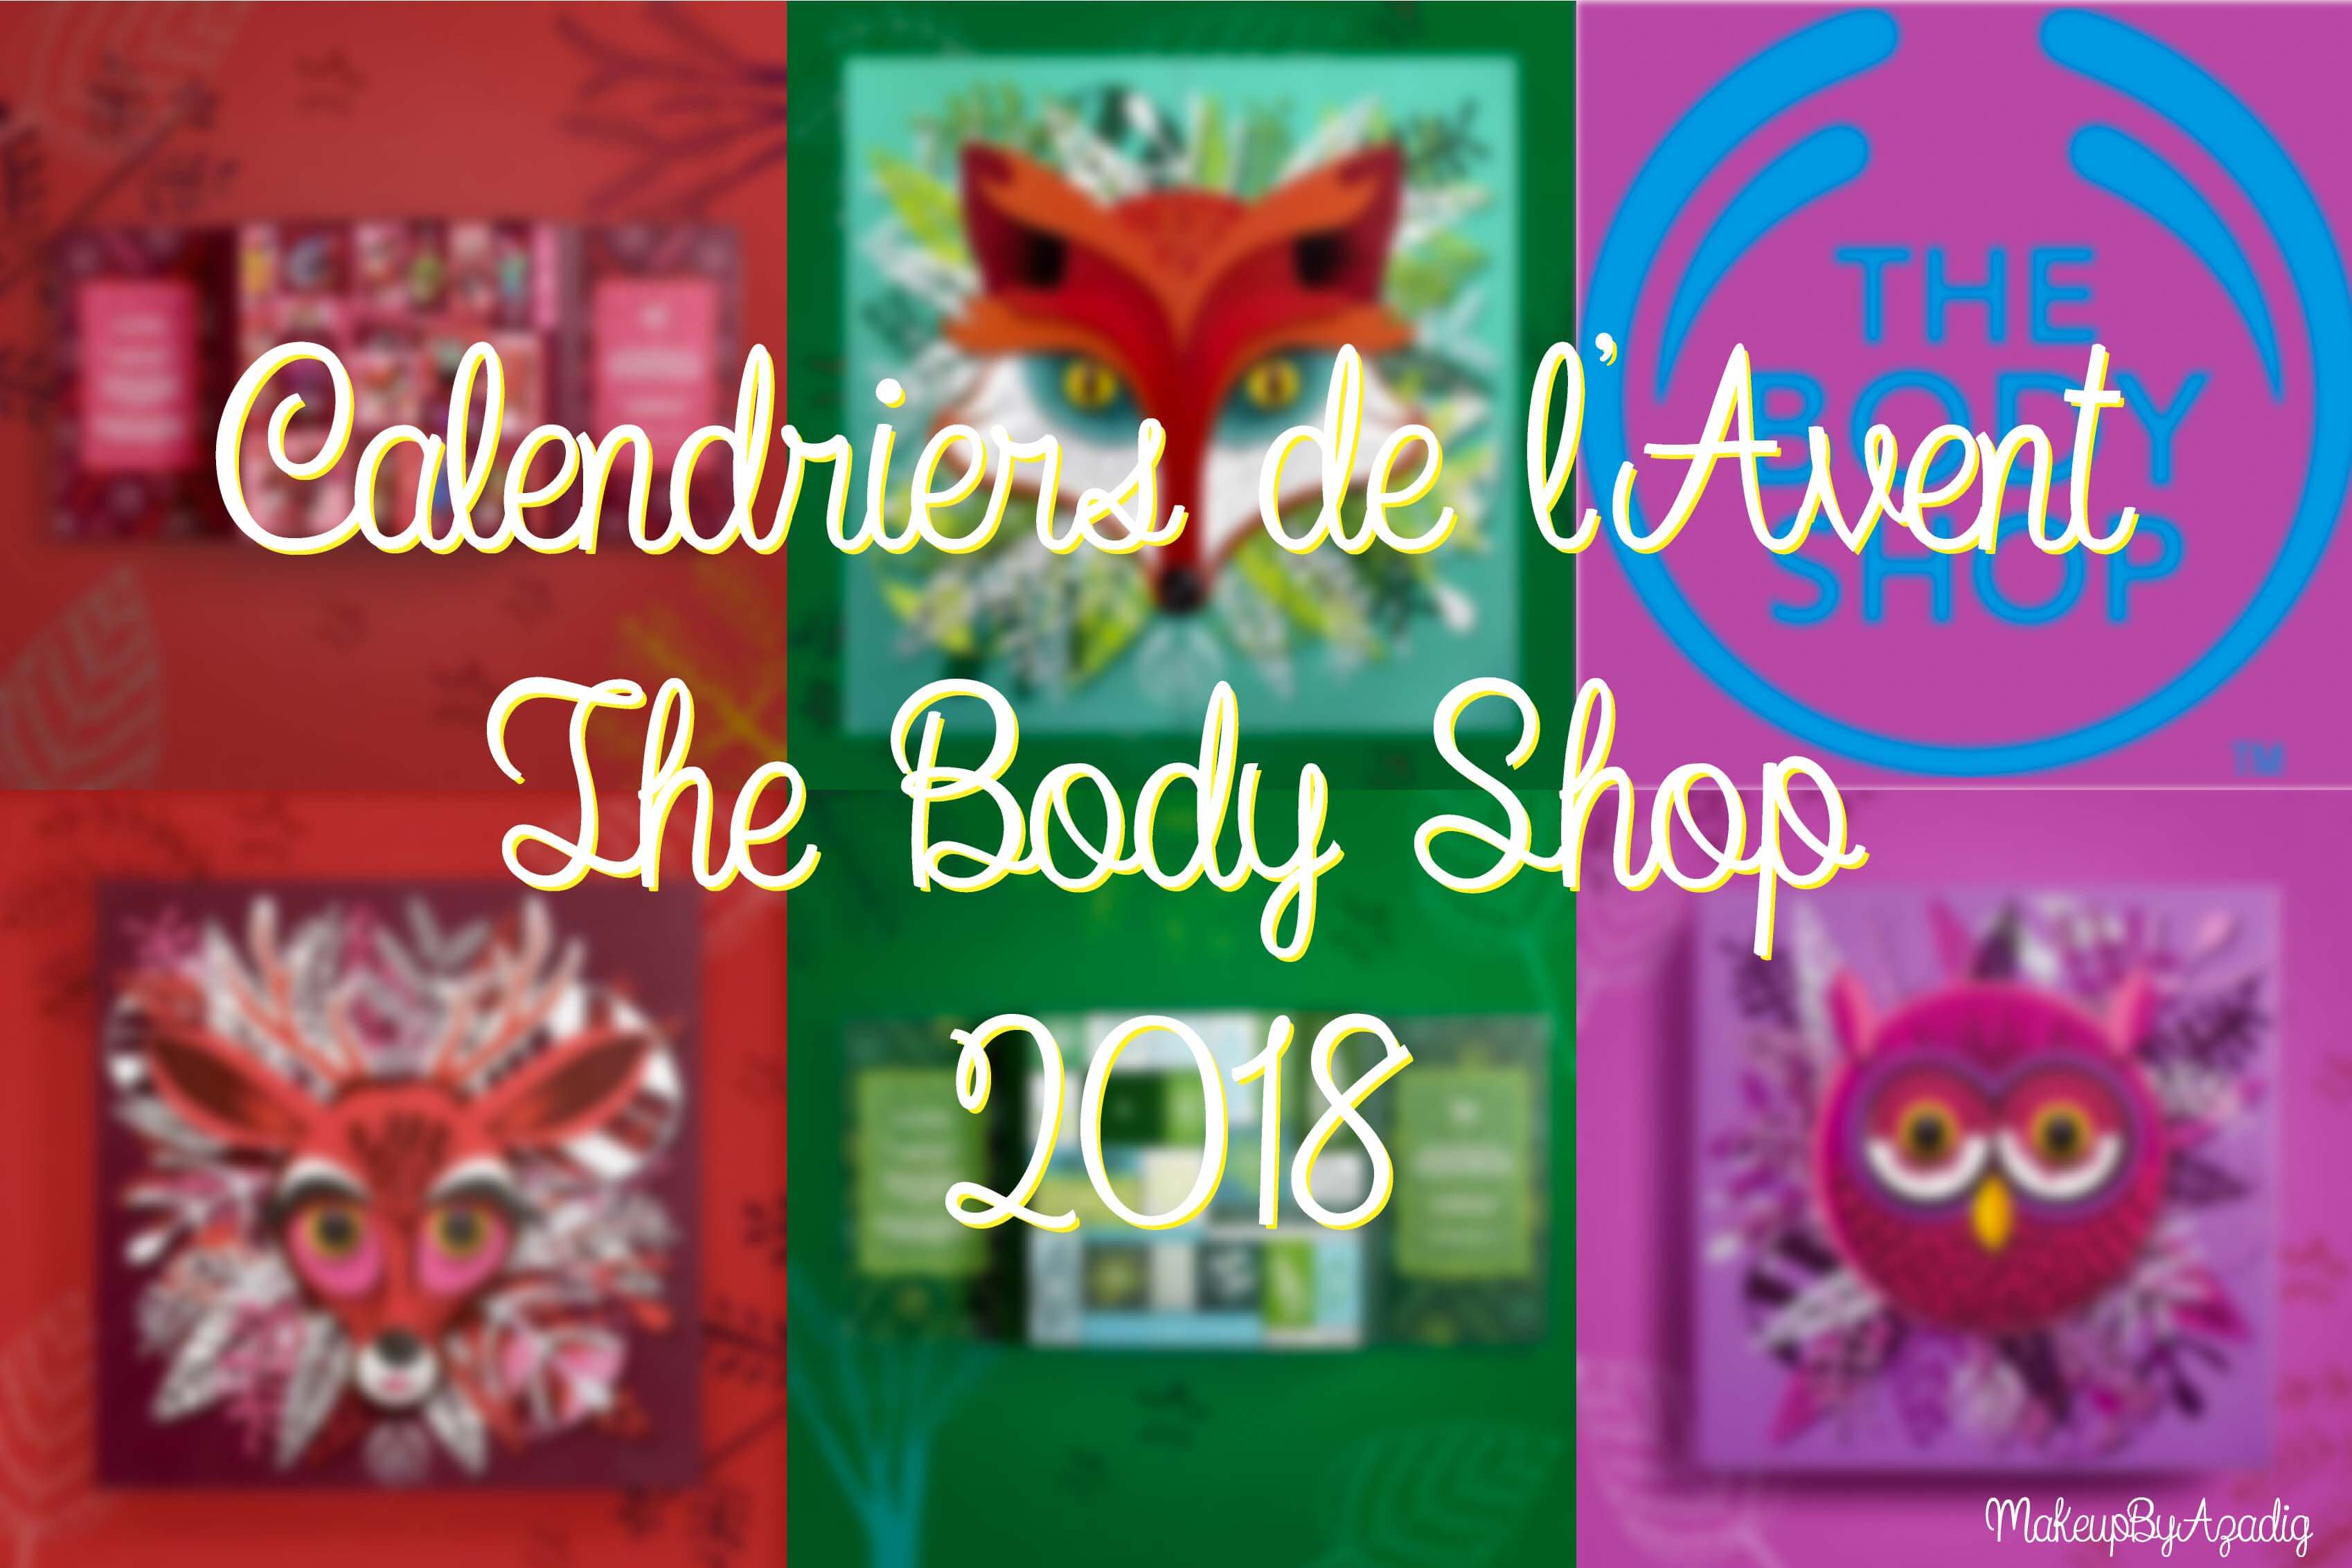 miniature-calendriers-de-lavent-the-body-shop-2018-ultime-classique-decouverte-makeupbyazadig-faon-rouge-2